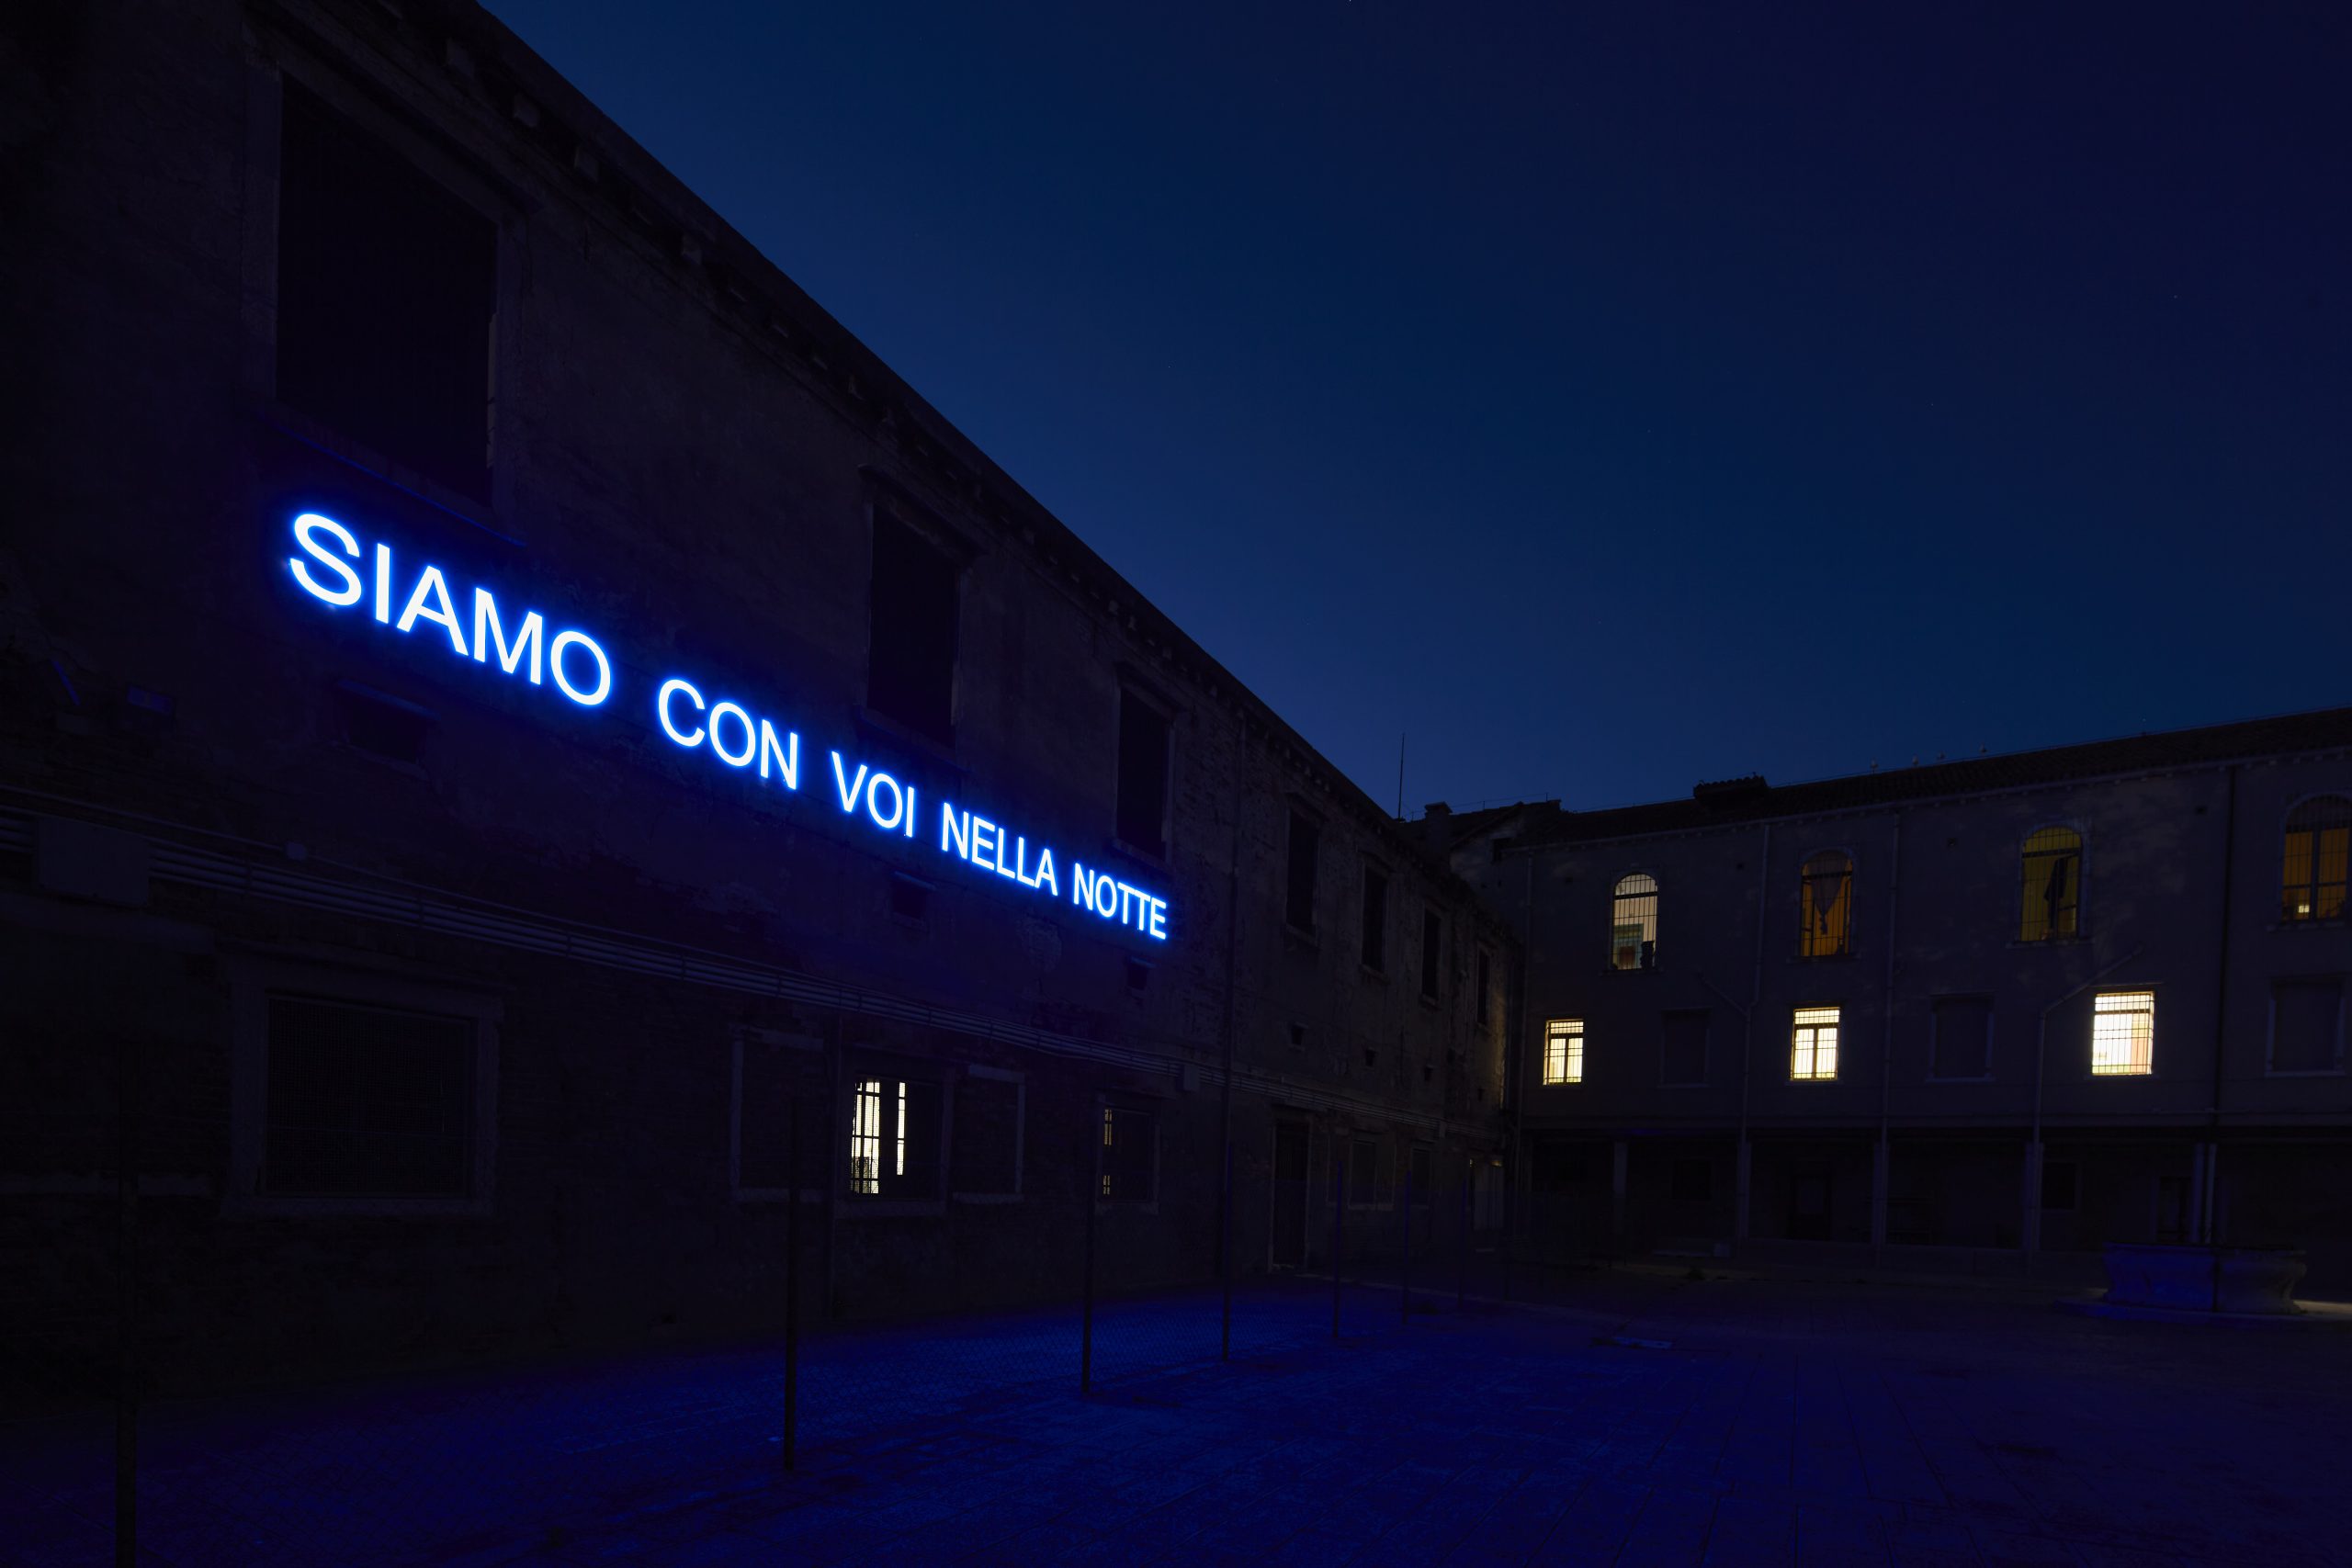 Il Padiglione del Vaticano alla Biennale è da Leone d’oro, le immagini in esclusiva dall’interno